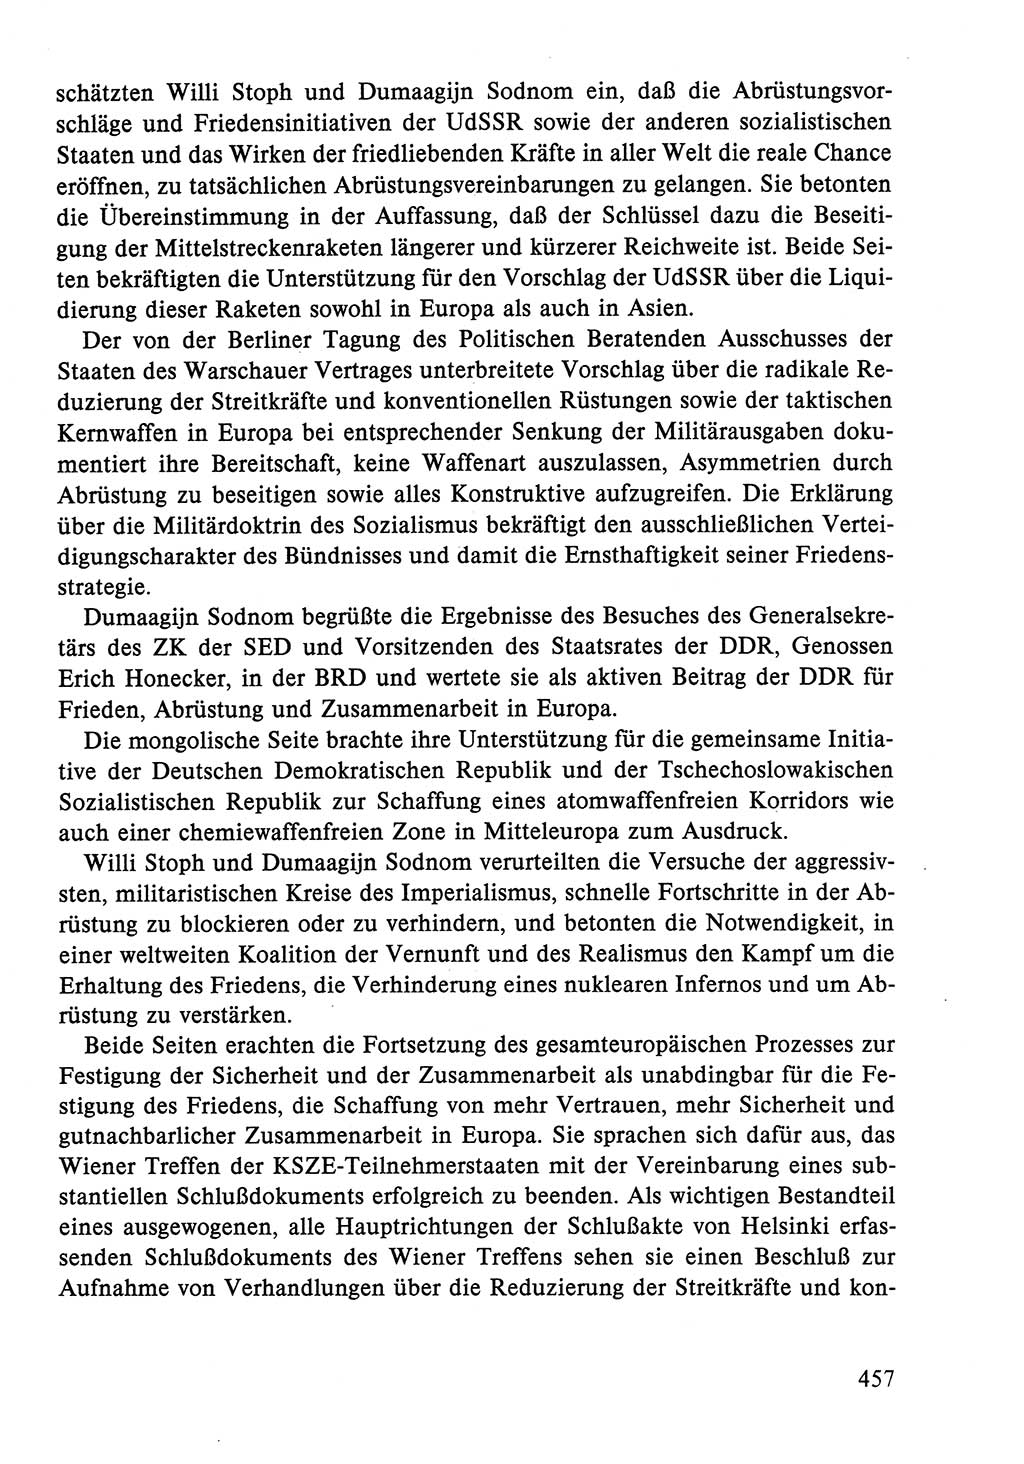 Dokumente der Sozialistischen Einheitspartei Deutschlands (SED) [Deutsche Demokratische Republik (DDR)] 1986-1987, Seite 457 (Dok. SED DDR 1986-1987, S. 457)